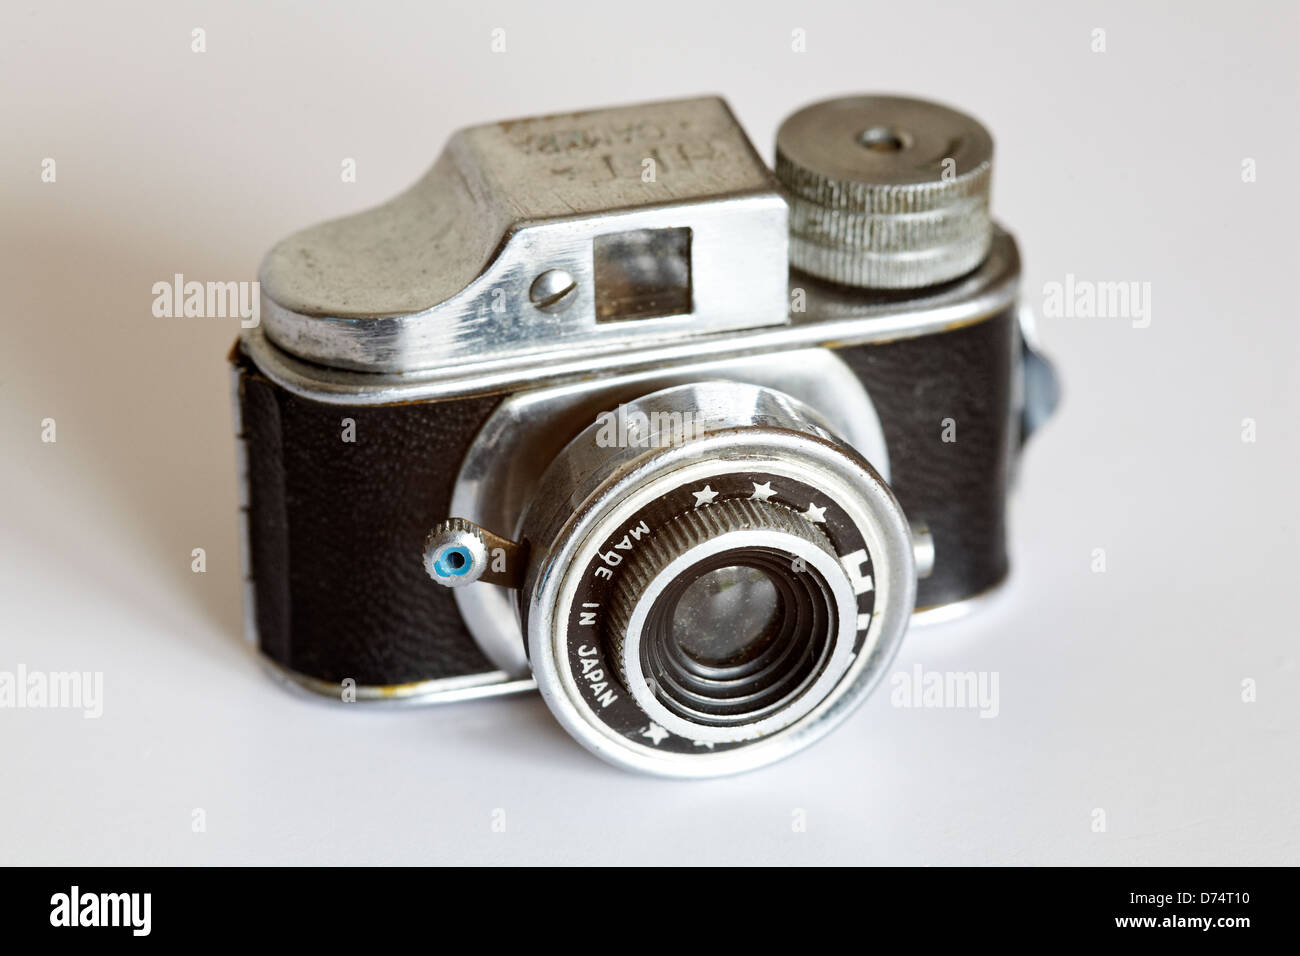 Mini cámara fotográfica analoque de funcionamiento real de Alamy